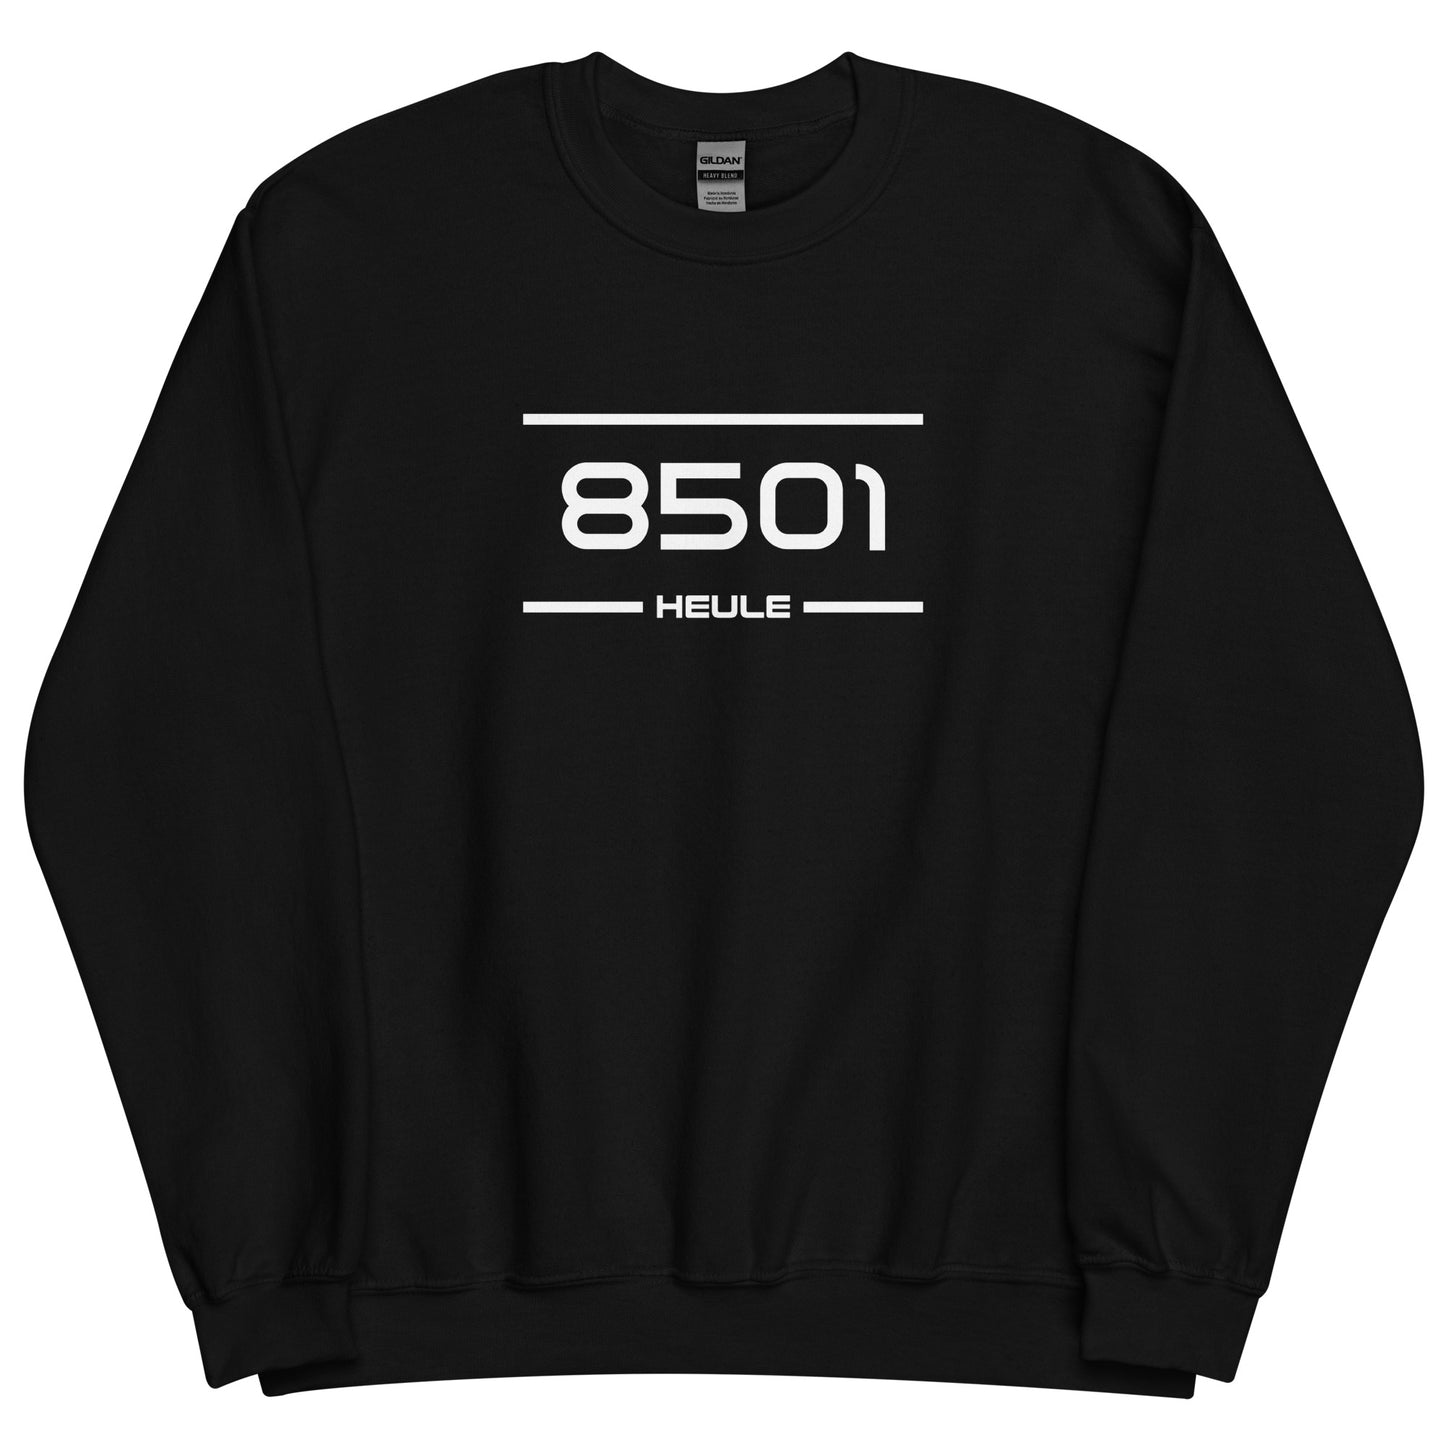 Sweater - 8501 - Heule (M/V)